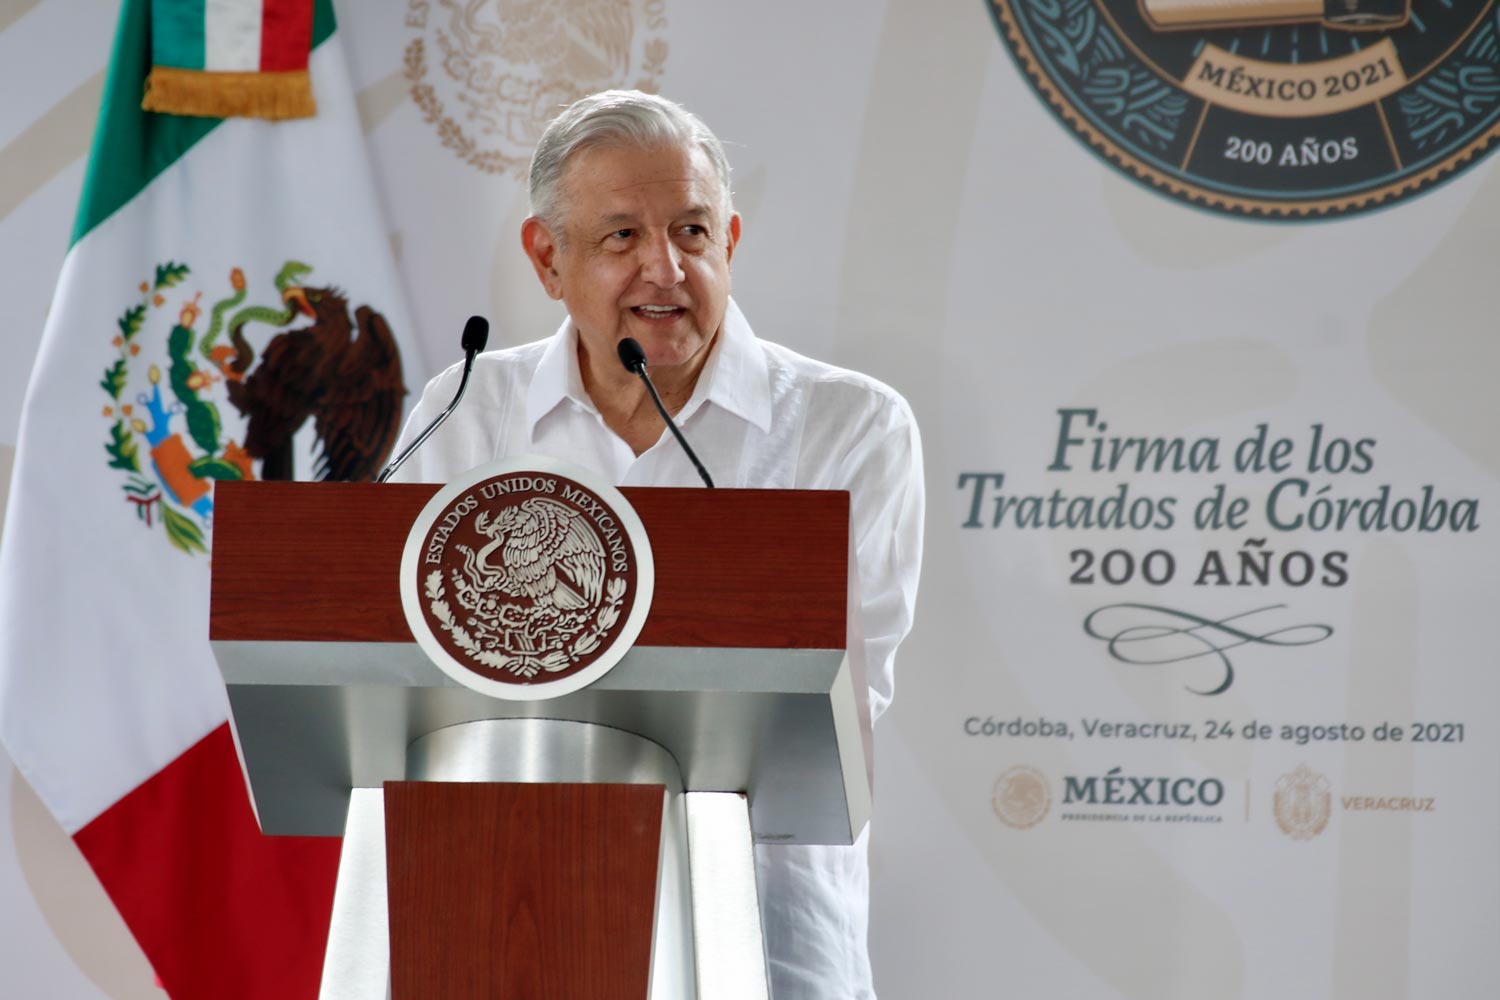 Discurso del presidente Andrés Manuel López Obrador en la Conmemoración de los 200 años de la Firma de los Tratados de Córdoba, desde Veracruz